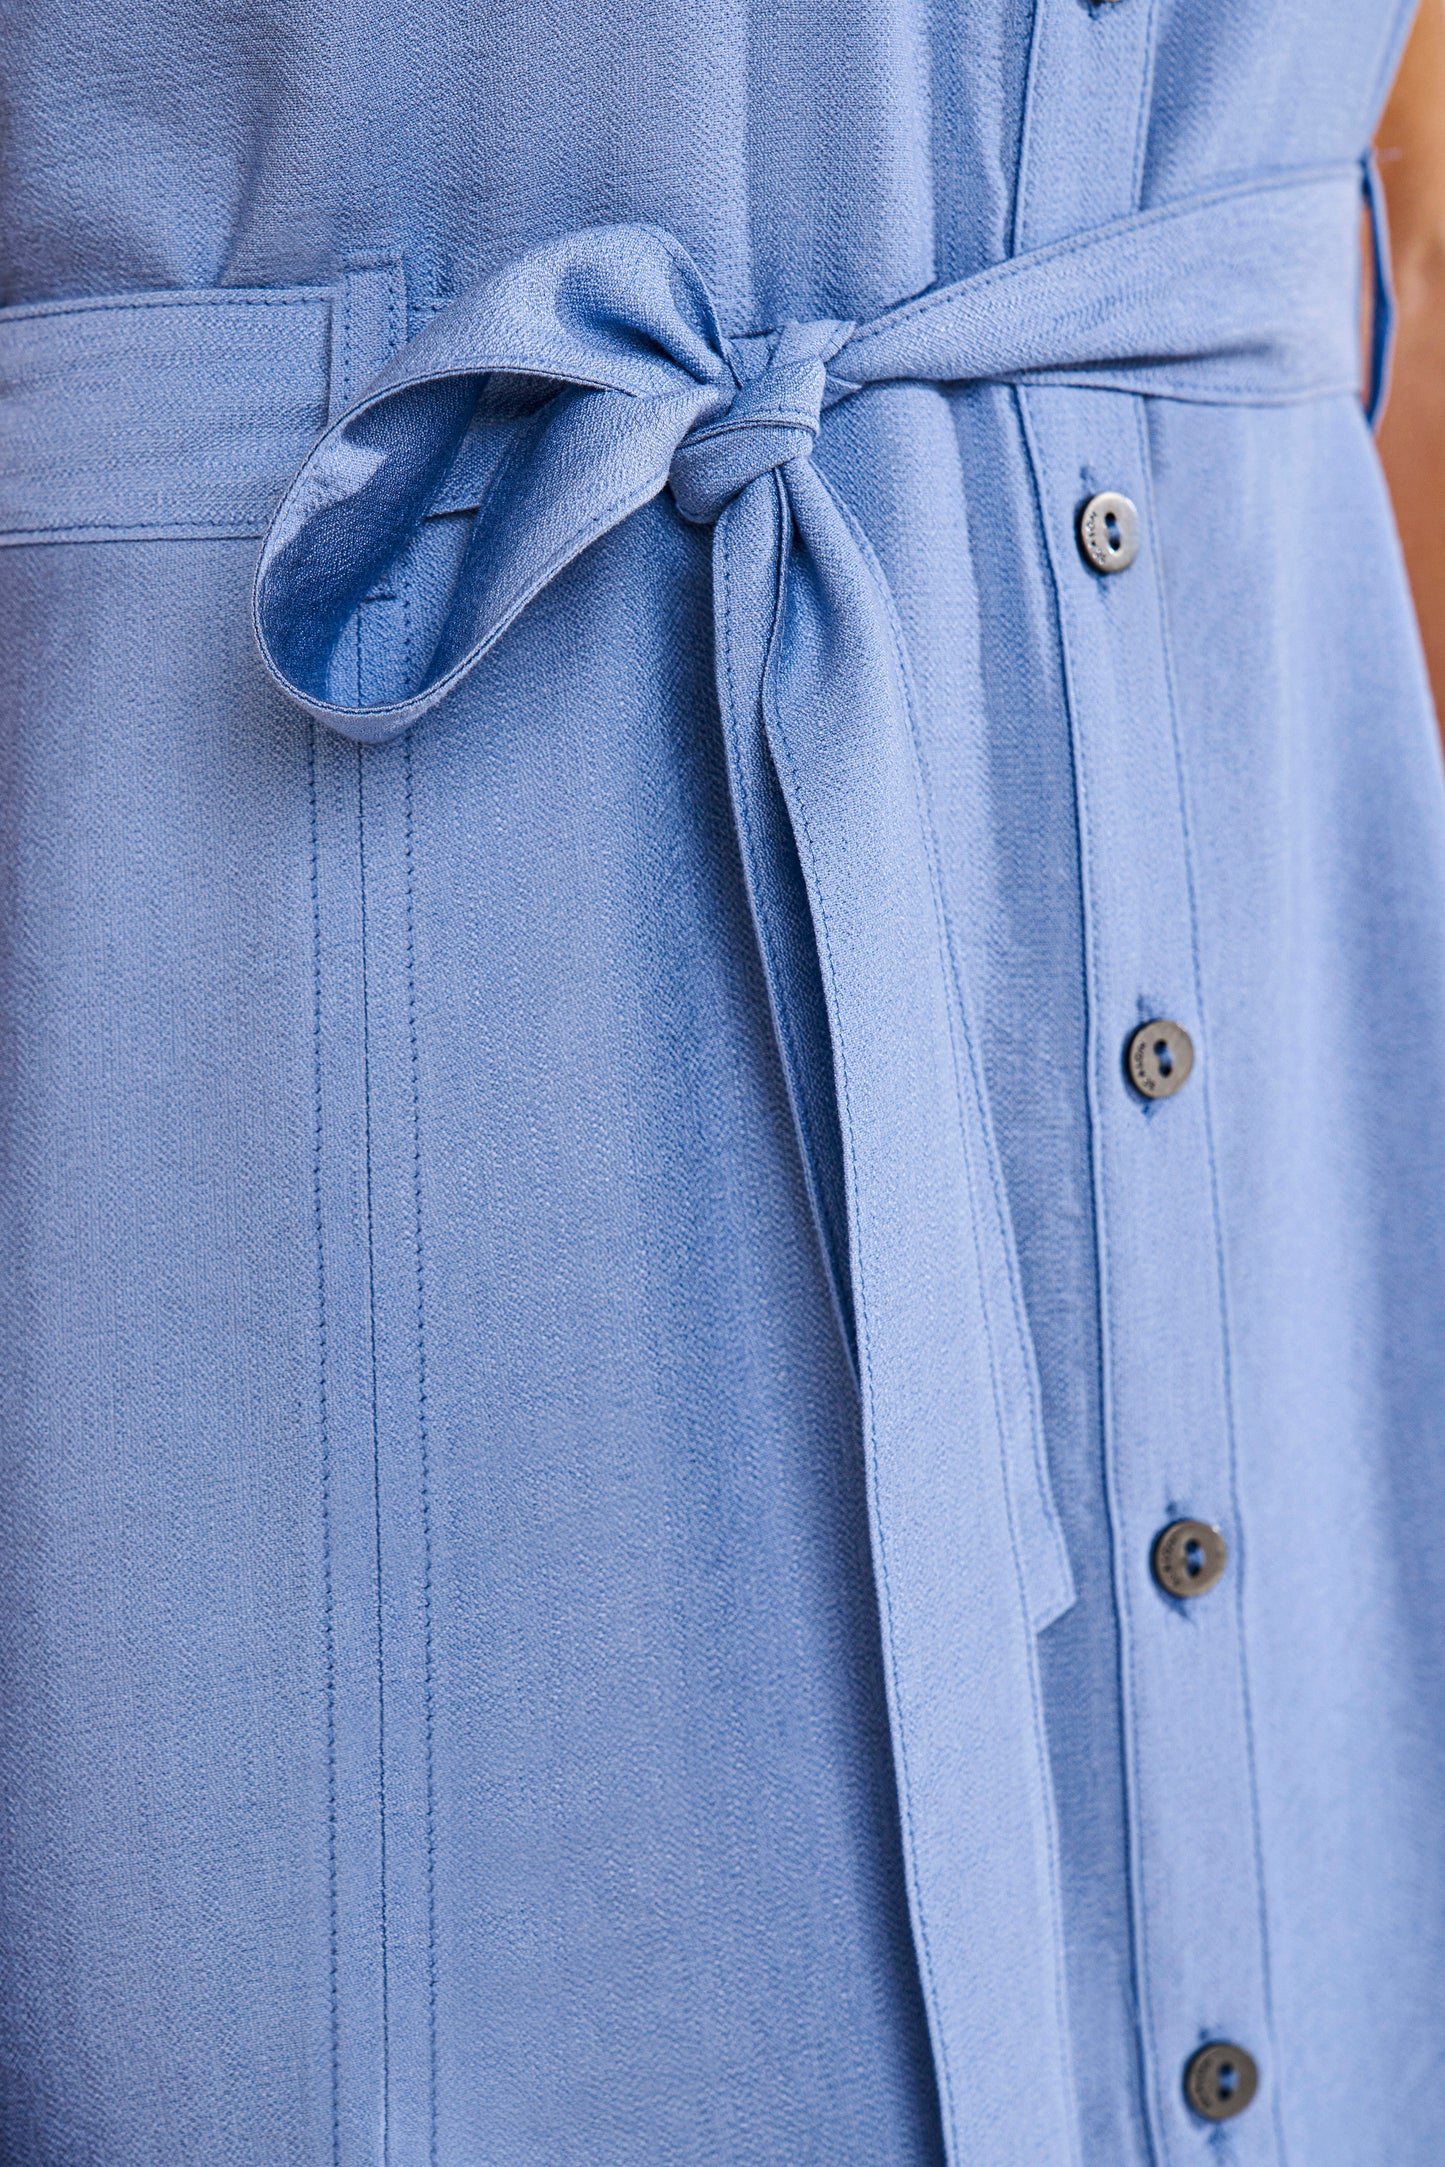 vestido viscose midi com recortes e detalhe amarração